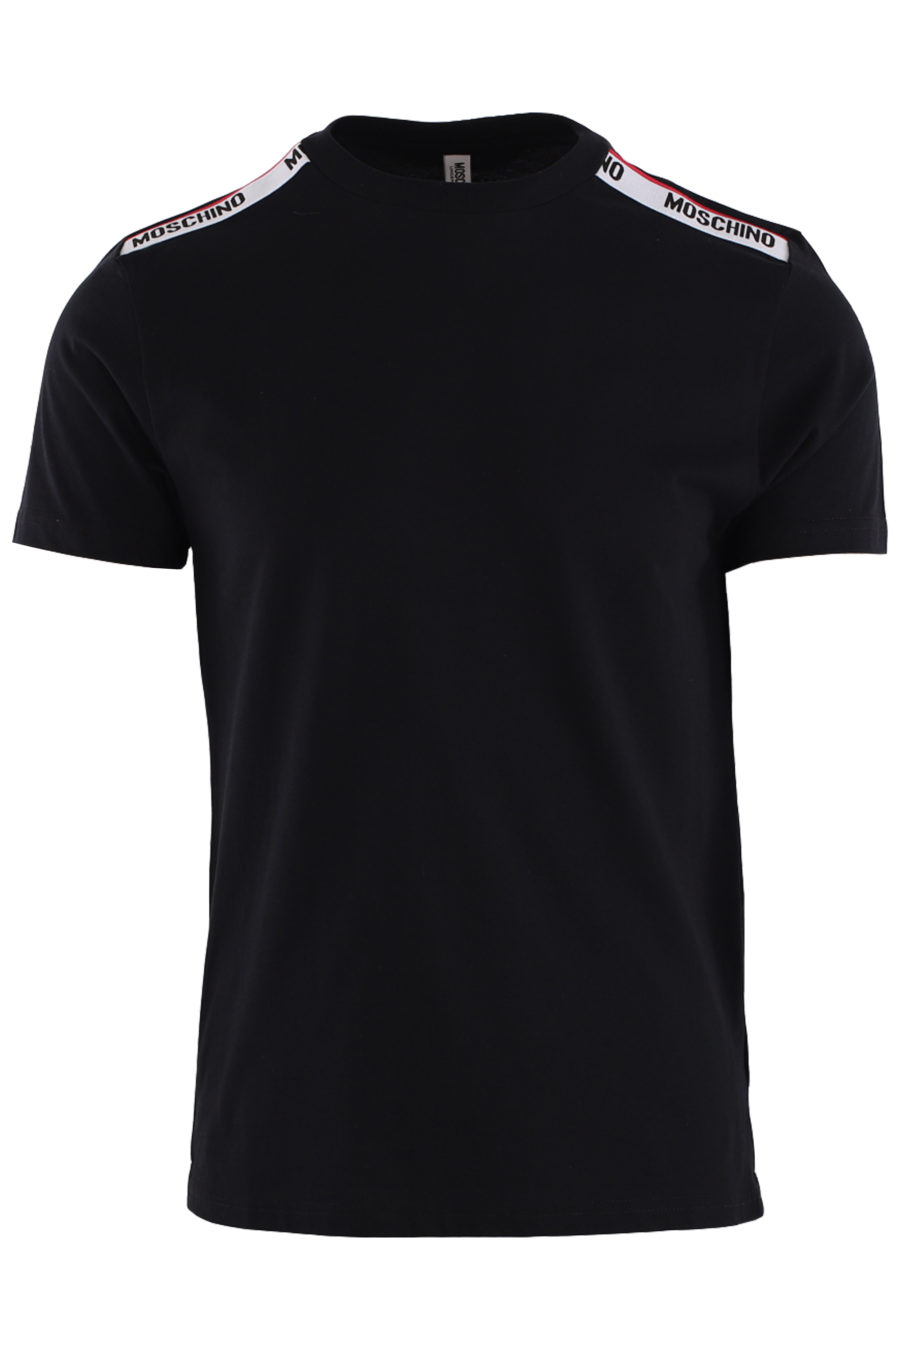 Camiseta negra con logo en cinta en hombros - IMG 8792